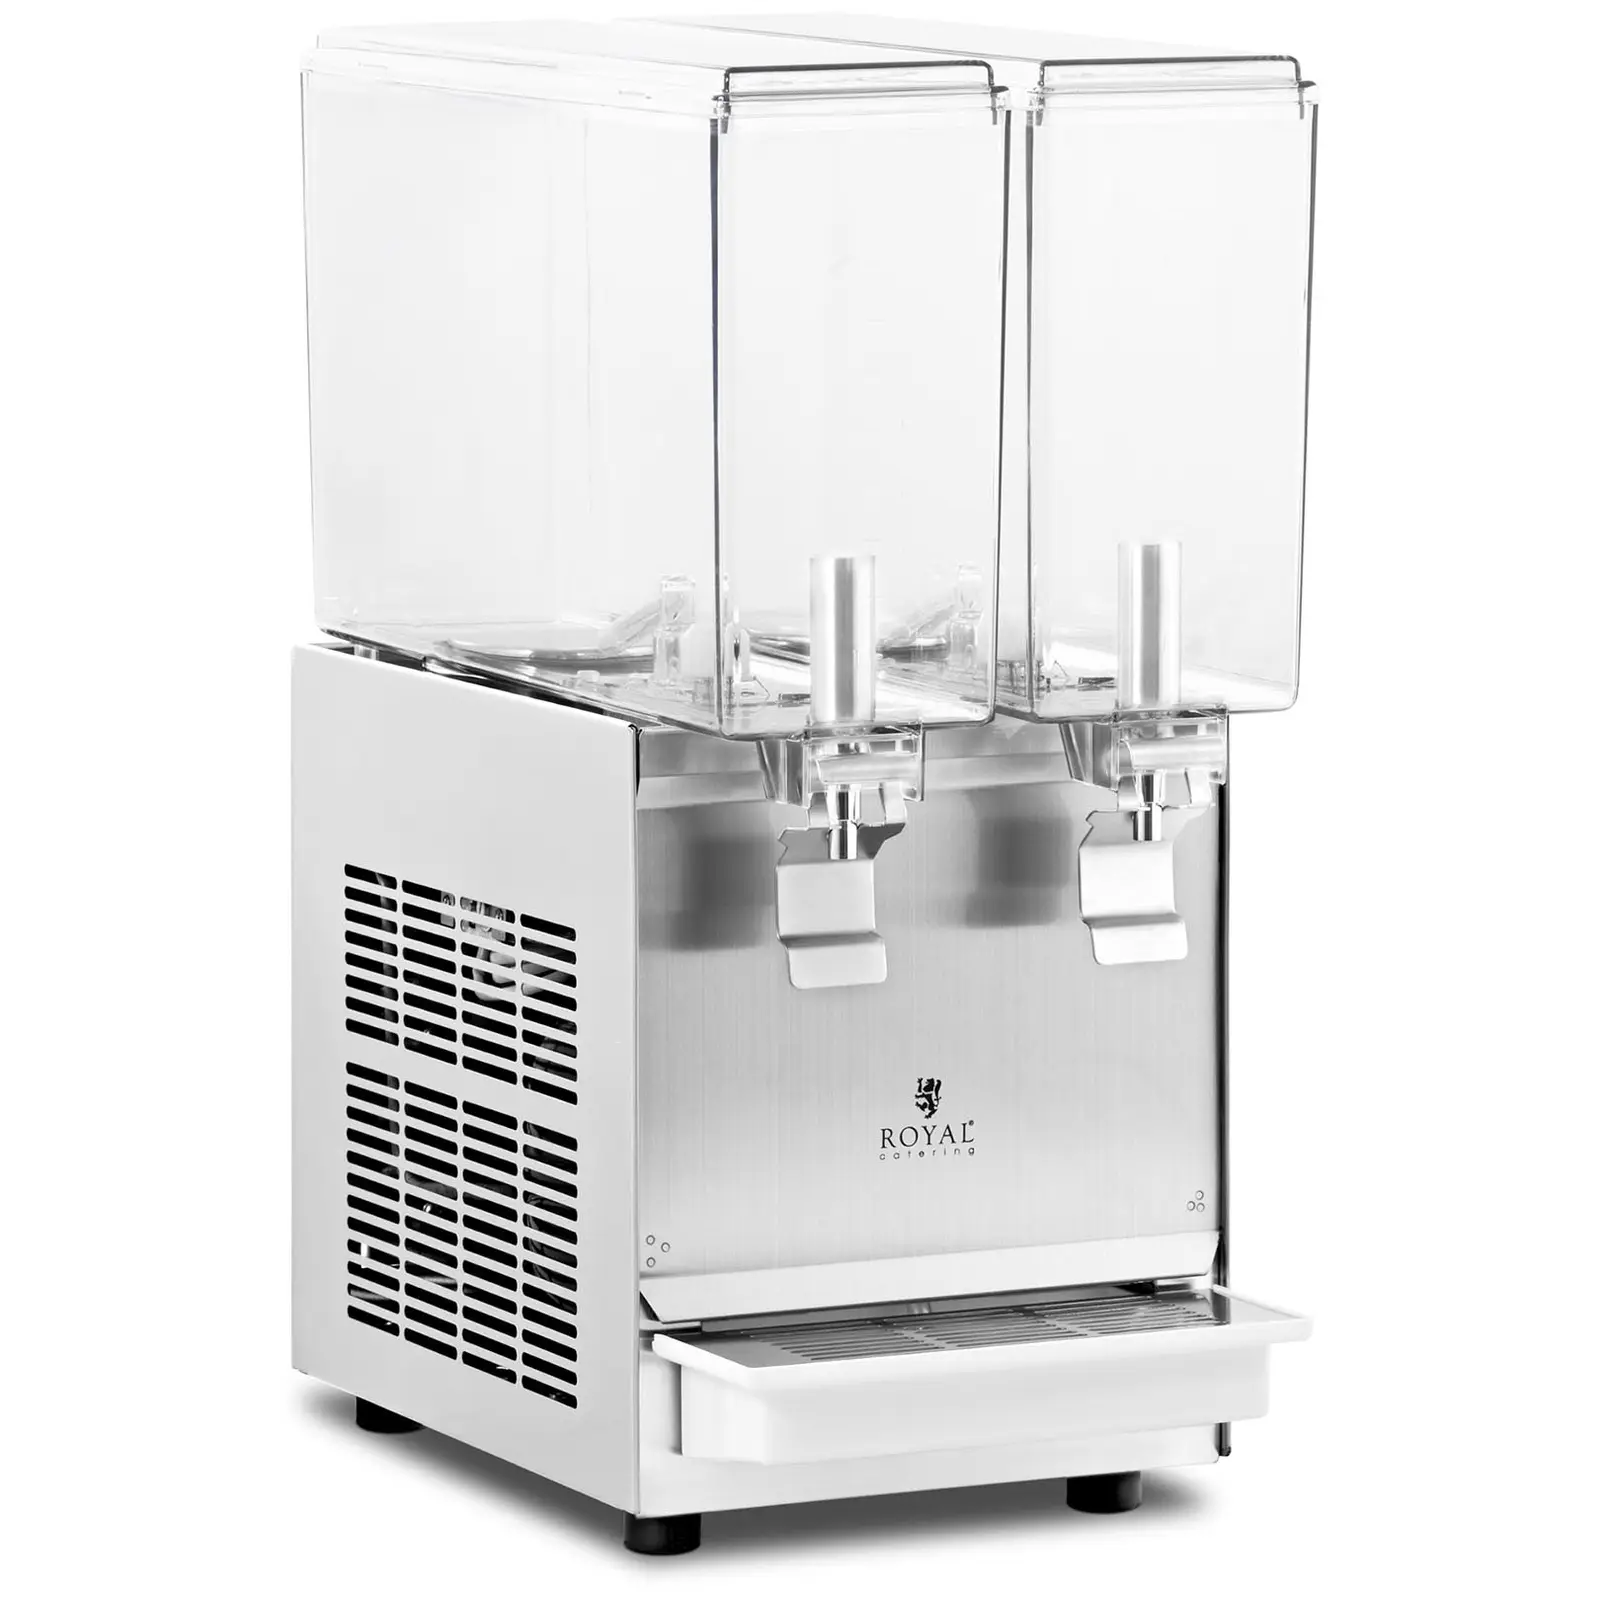 Dispenser bibite con rubinetto - 2 x 10 L - Royal Catering - sistema di raffreddamento